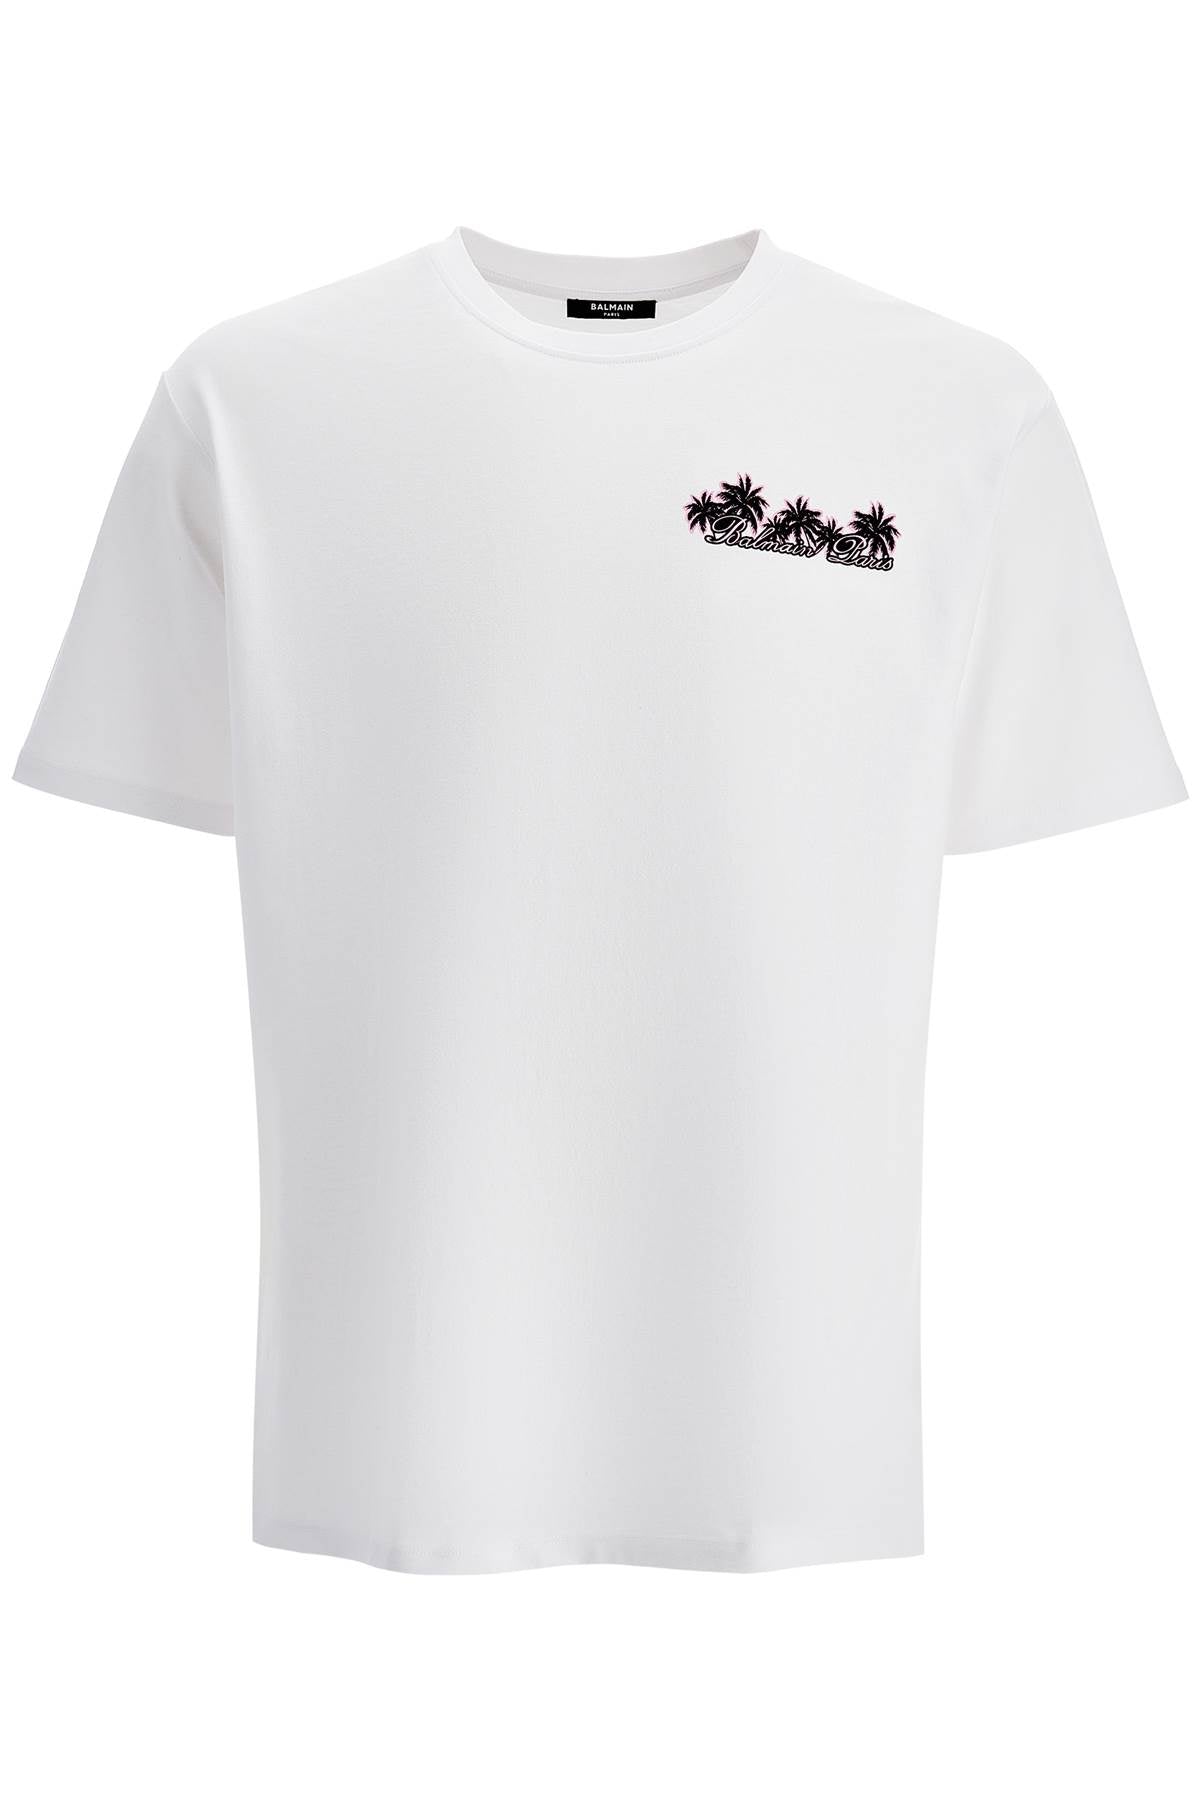 Balmain Club T Shirt   White